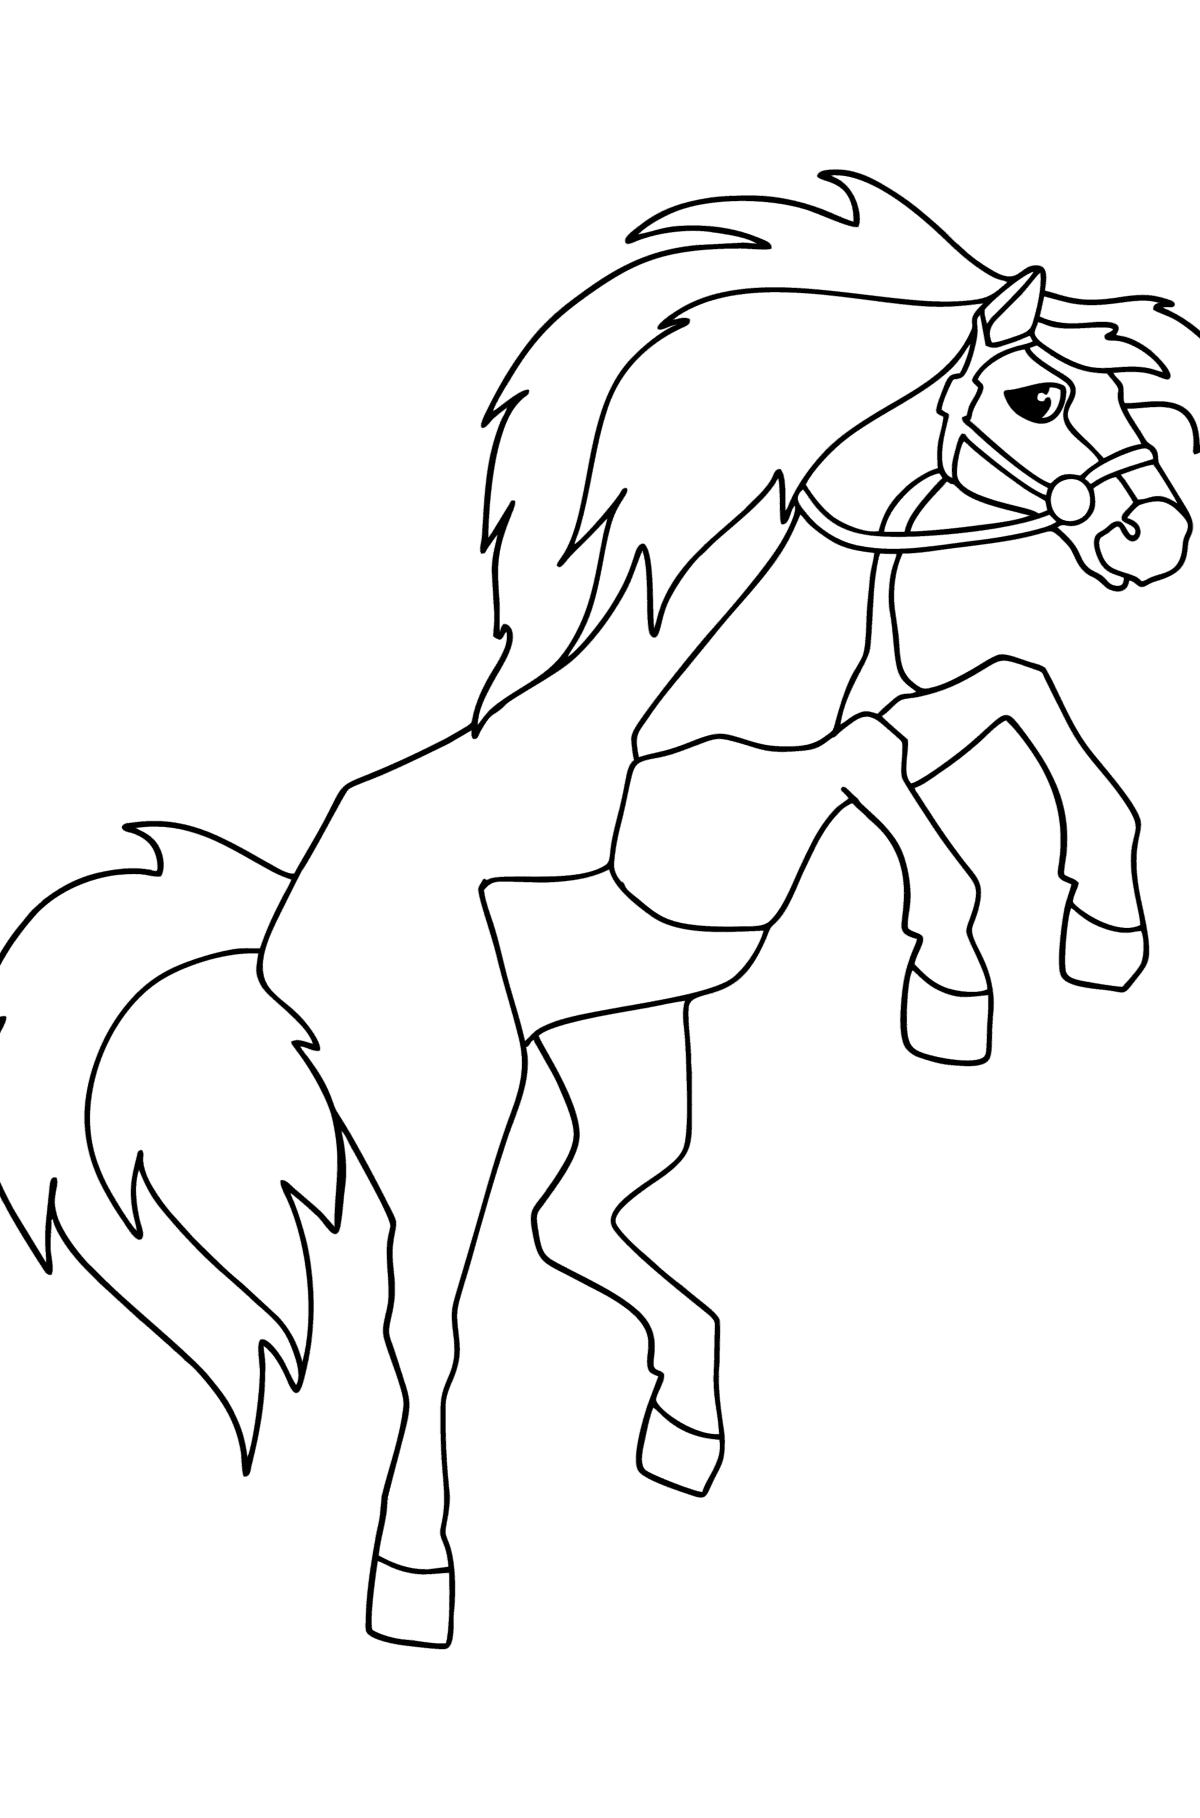 Раскраска Скачущая лошадь - Картинки для Детей